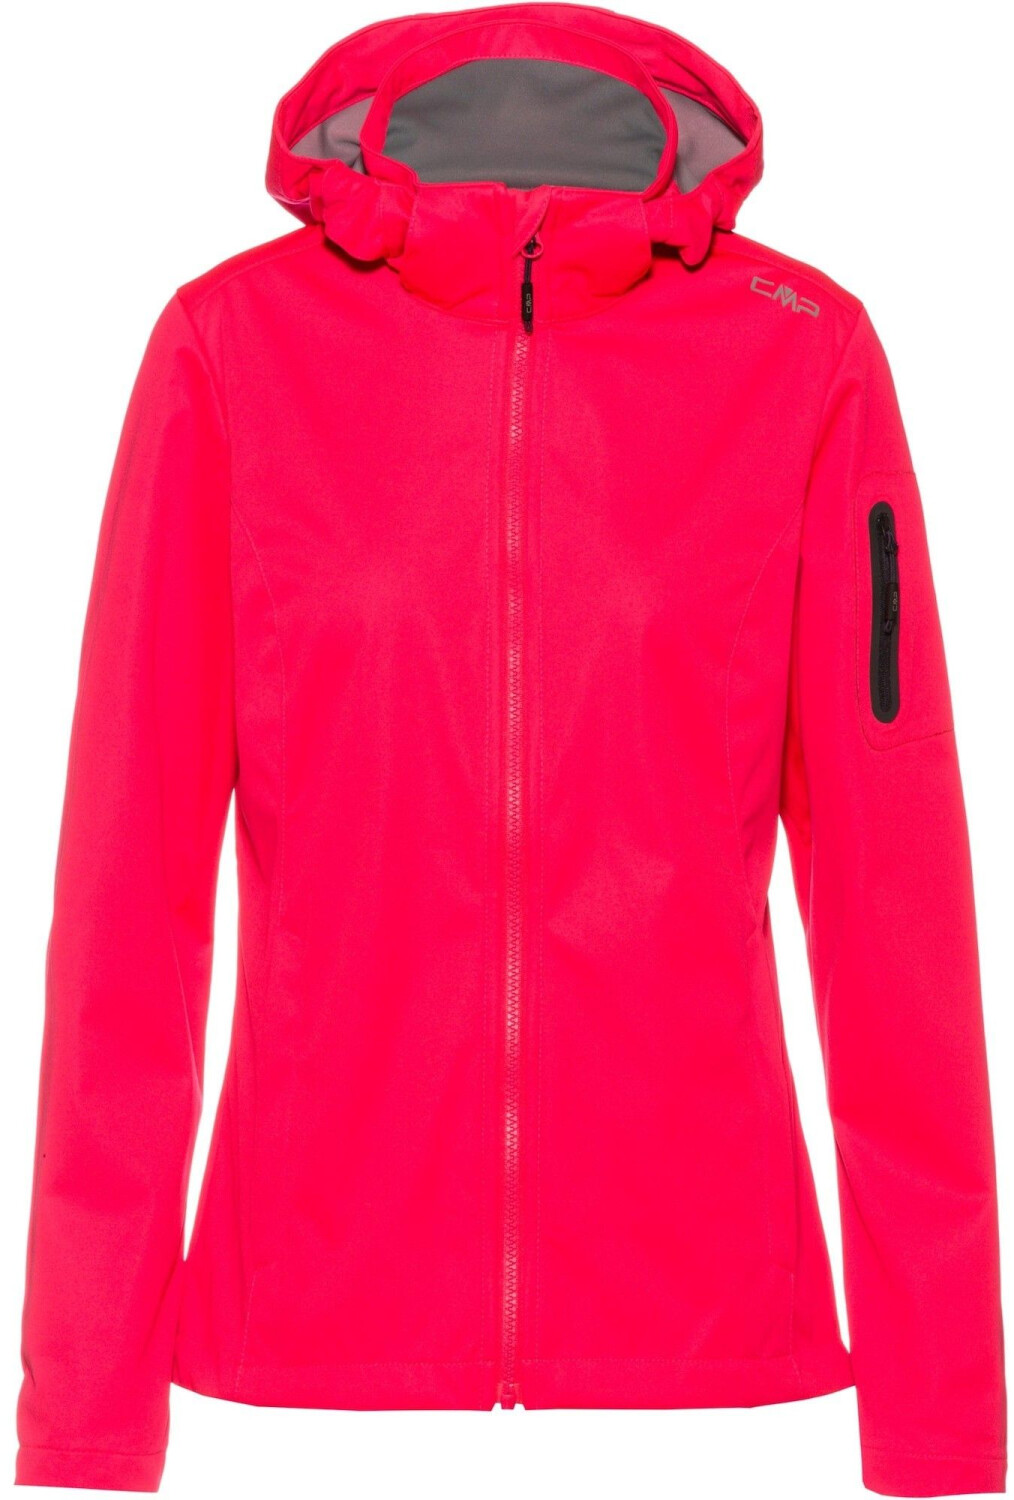 Angebot unterbreiten CMP Light Softshell Jacket Women bei (39A5016) Preisvergleich € ab 30,19 